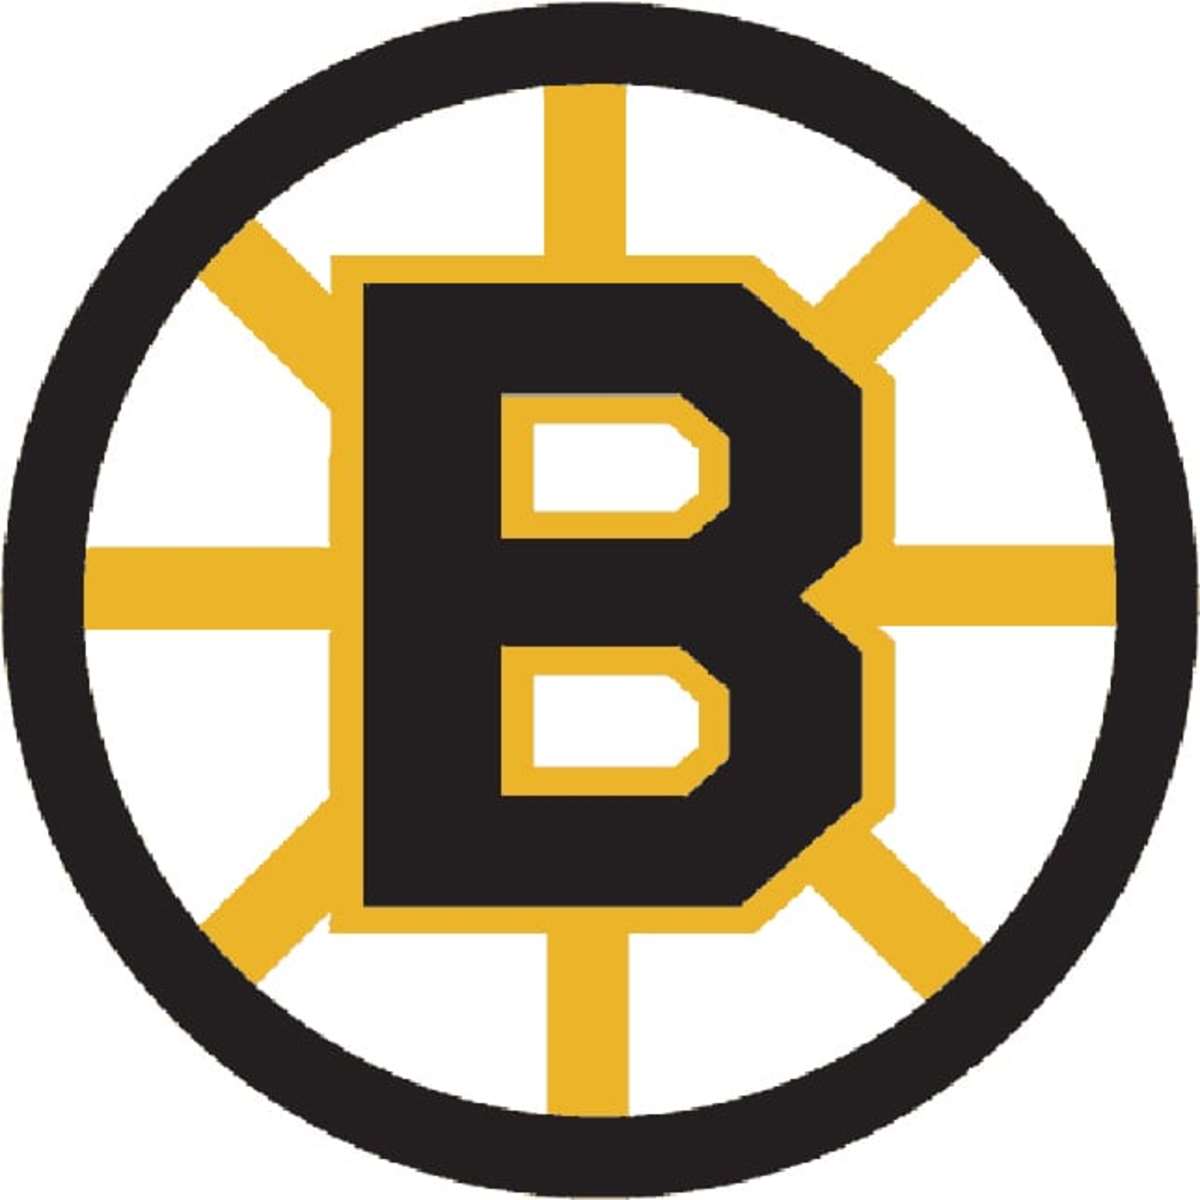 nhl-logo-rankings-no-7-boston-bruins-thehockeynews